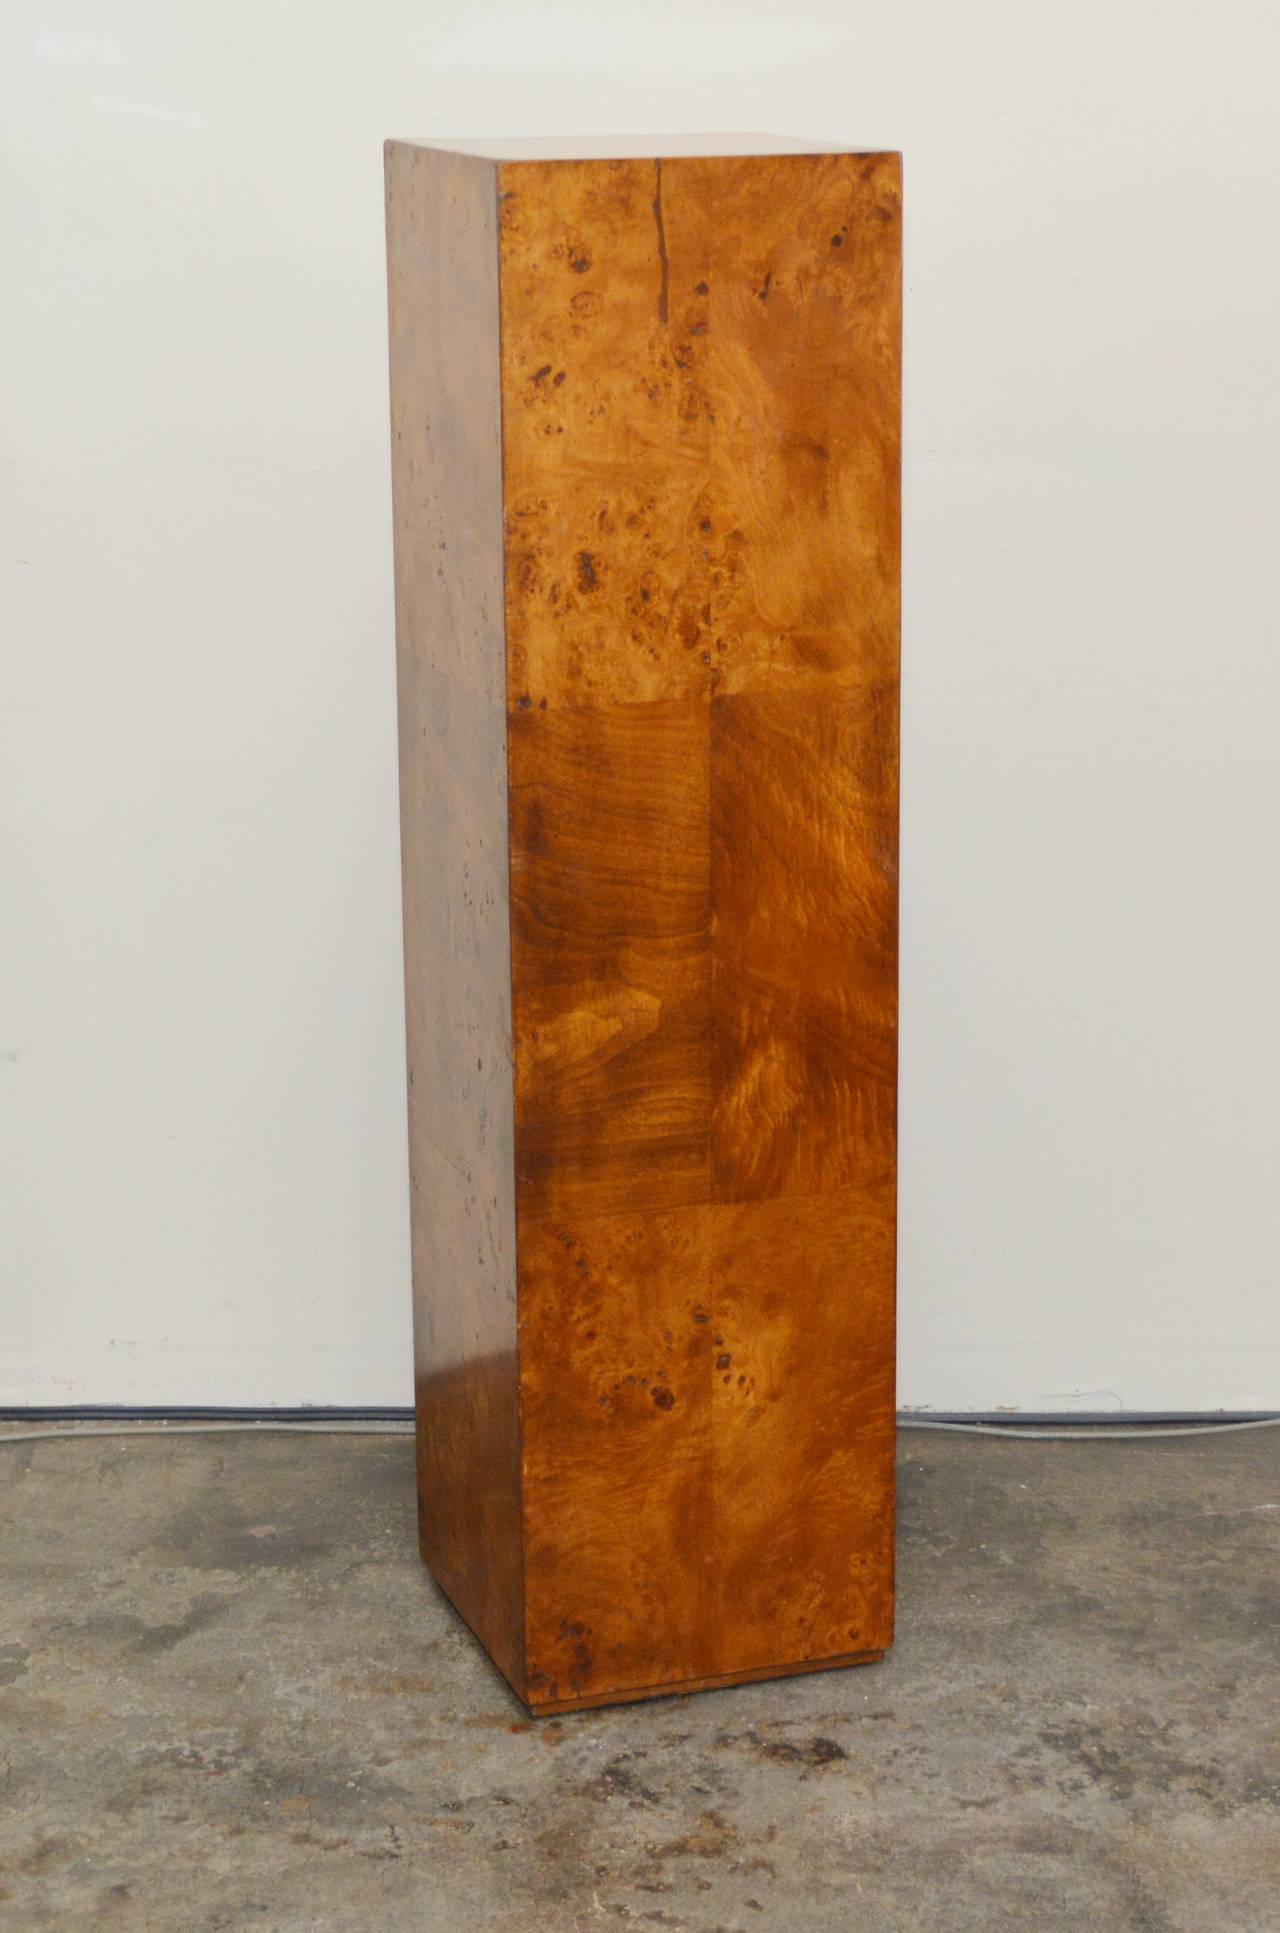 This pedestal has elm burl wood veneer.